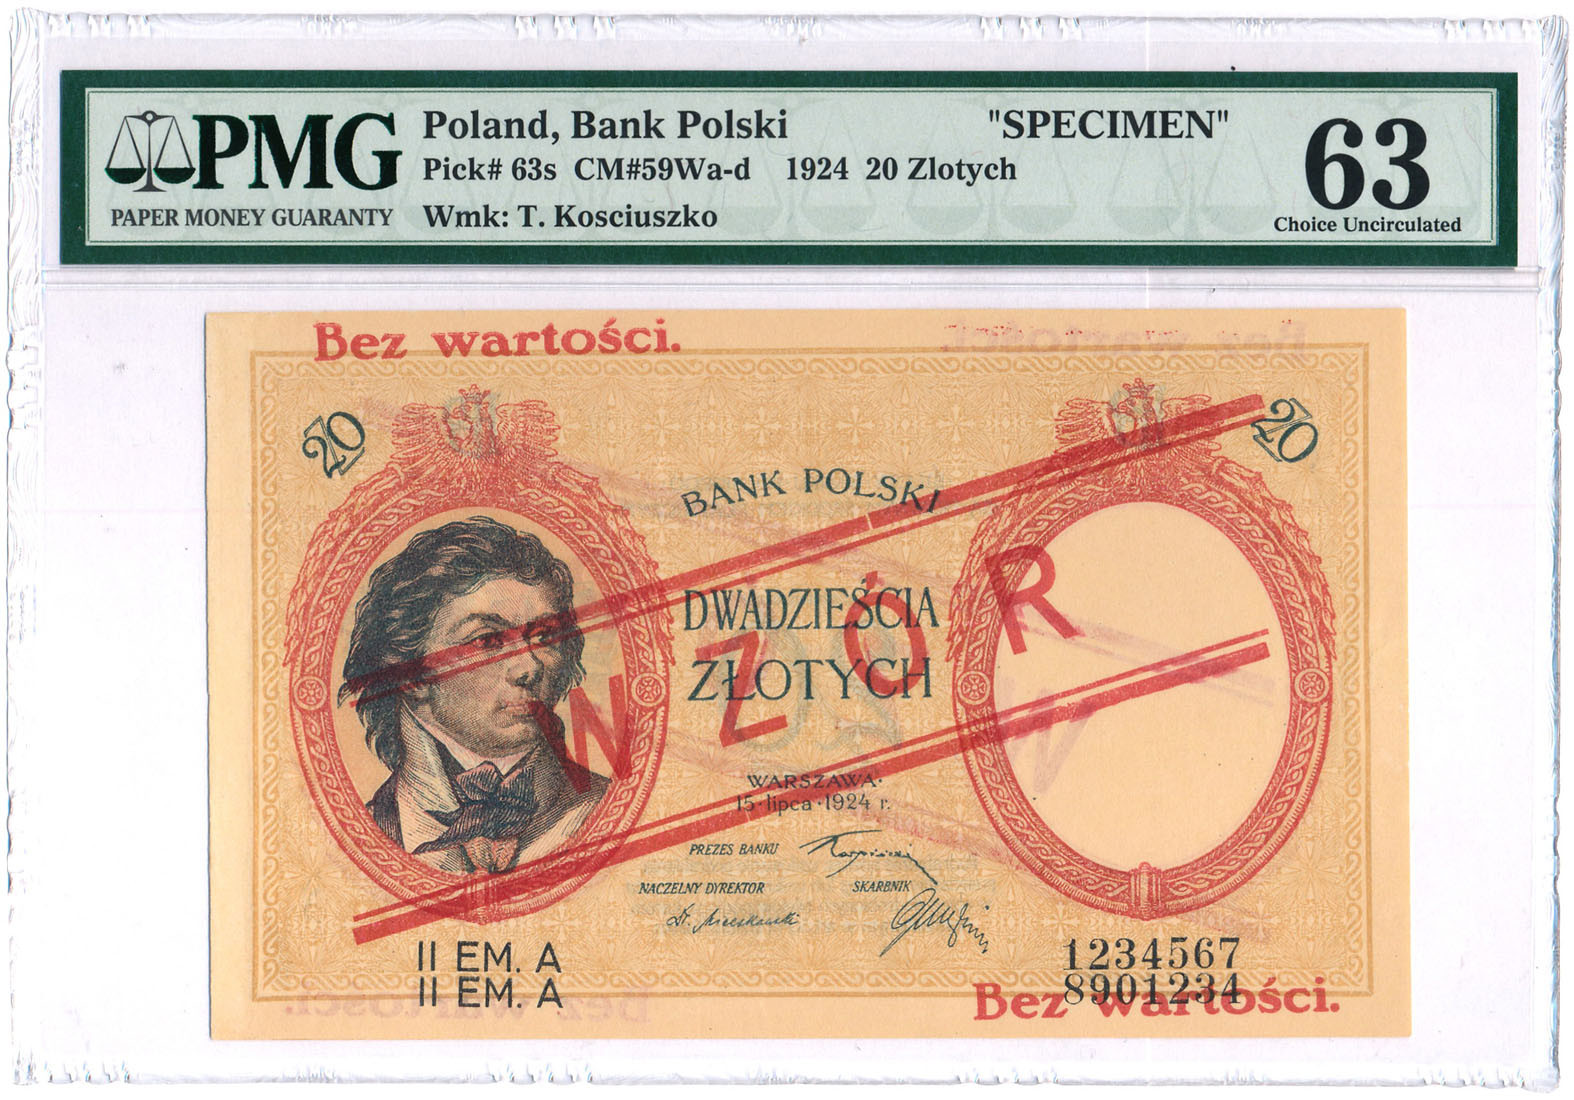 WZÓR 20 złotych 1924 Kościuszko II EM. A PMG 63 - PIĘKNY - RZADKOŚĆ R6